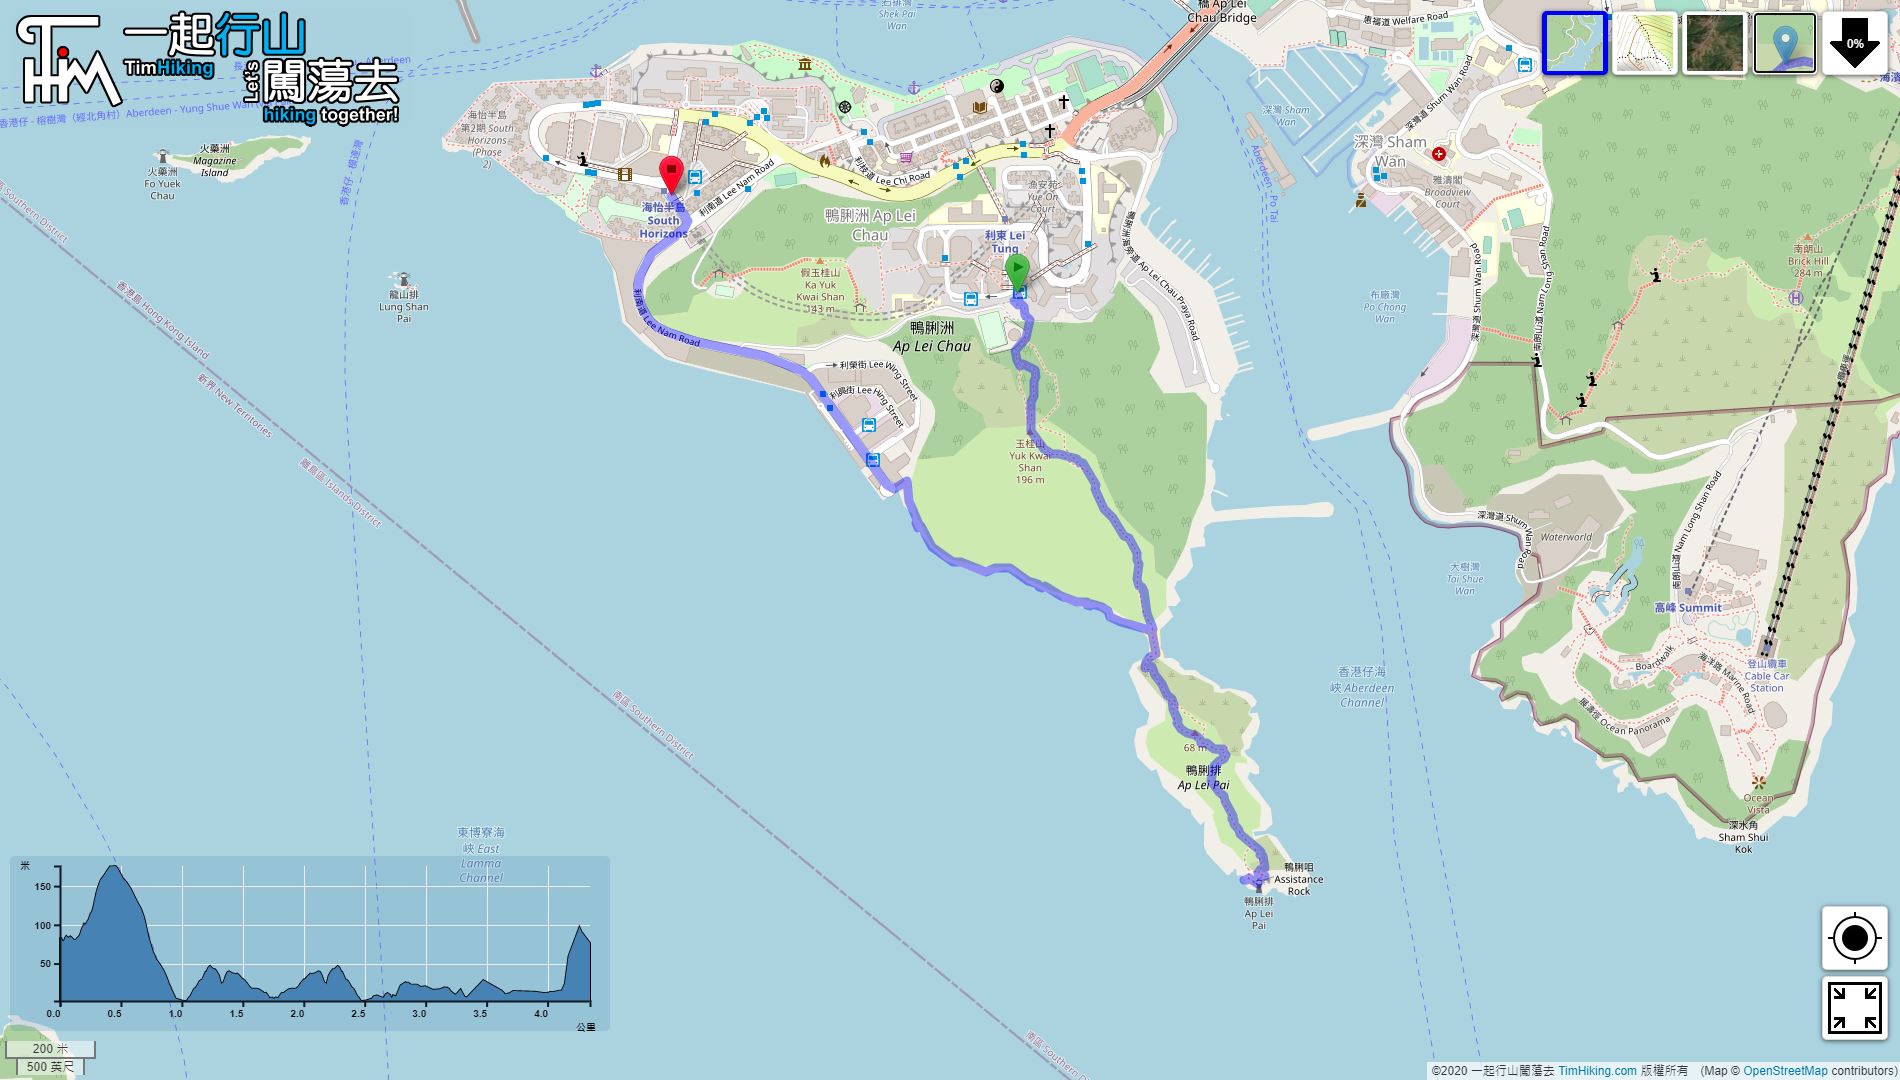 “炉峰自然步道”路线地图